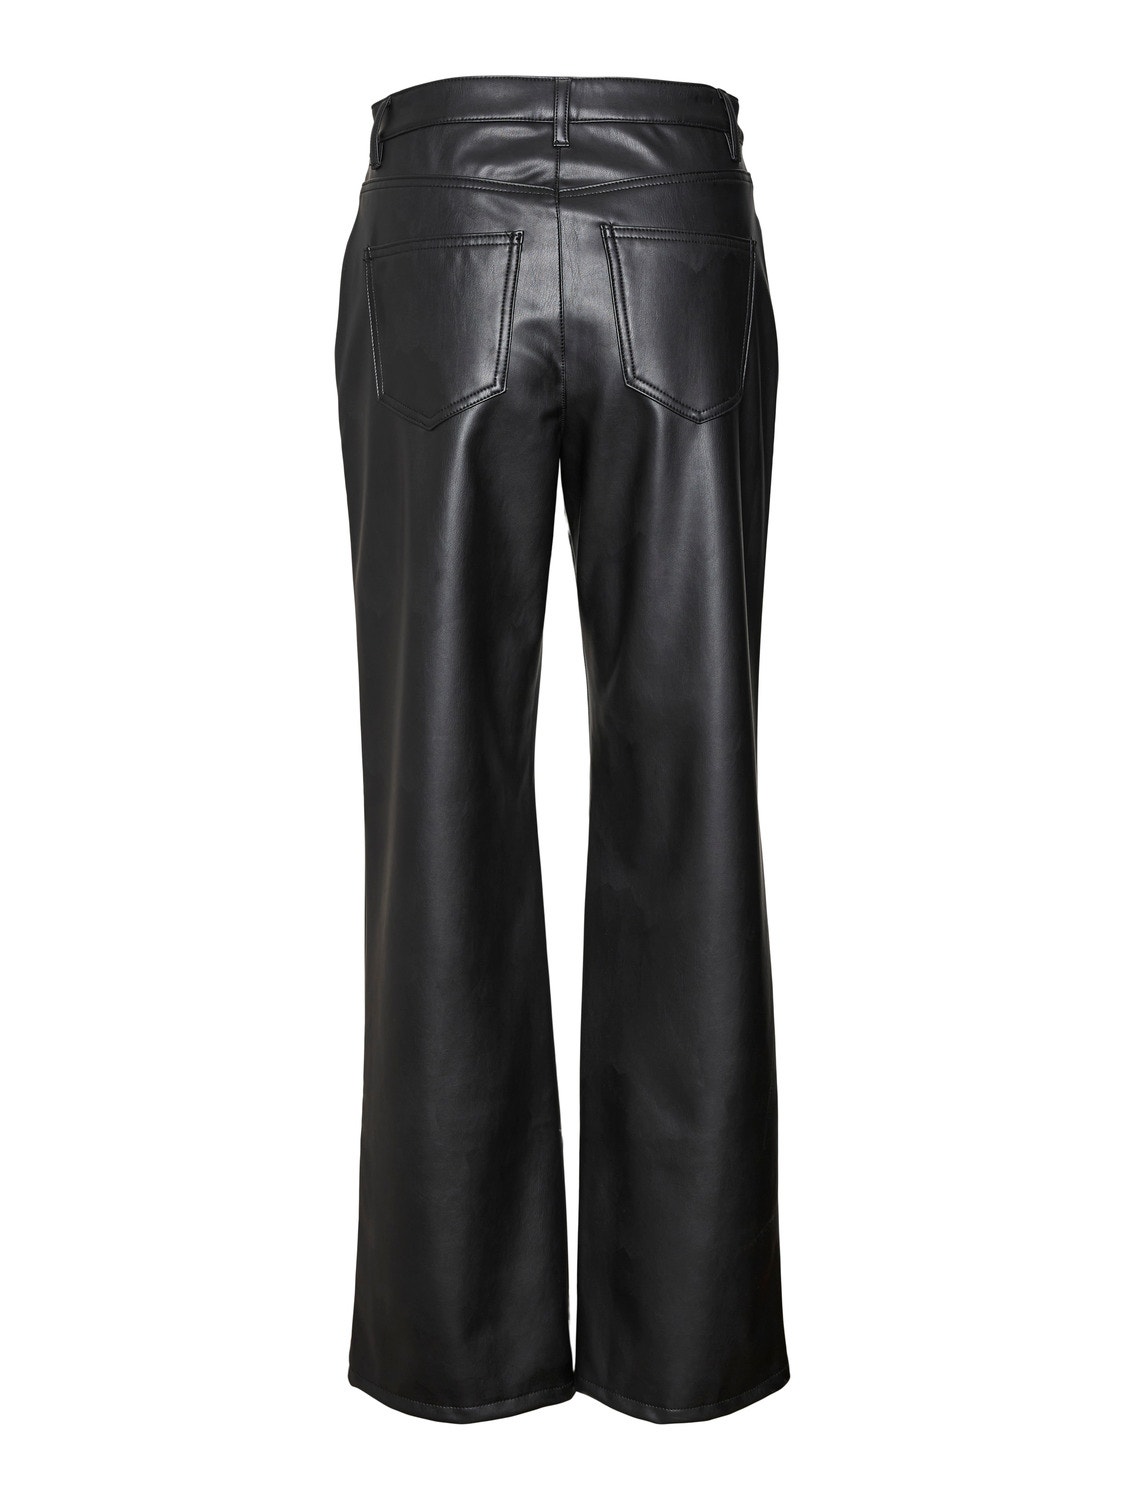 Vero Moda VMTESSA Trousers -Black - 10310878